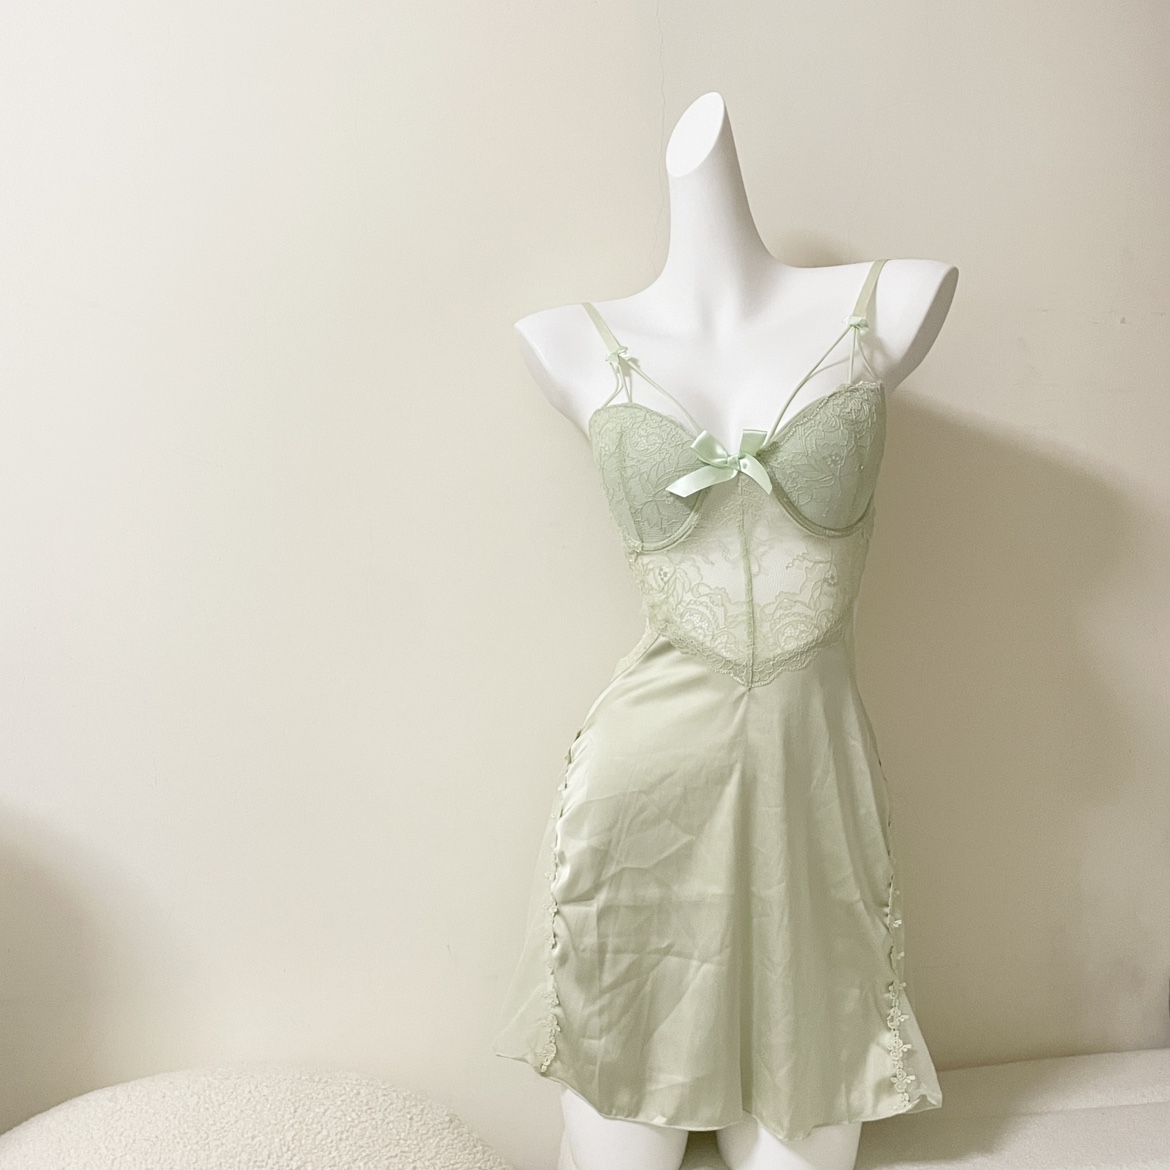 法式复古宫廷淡绿色性感吊带睡裙蕾丝绸缎拼接镂空透视露背私房裙